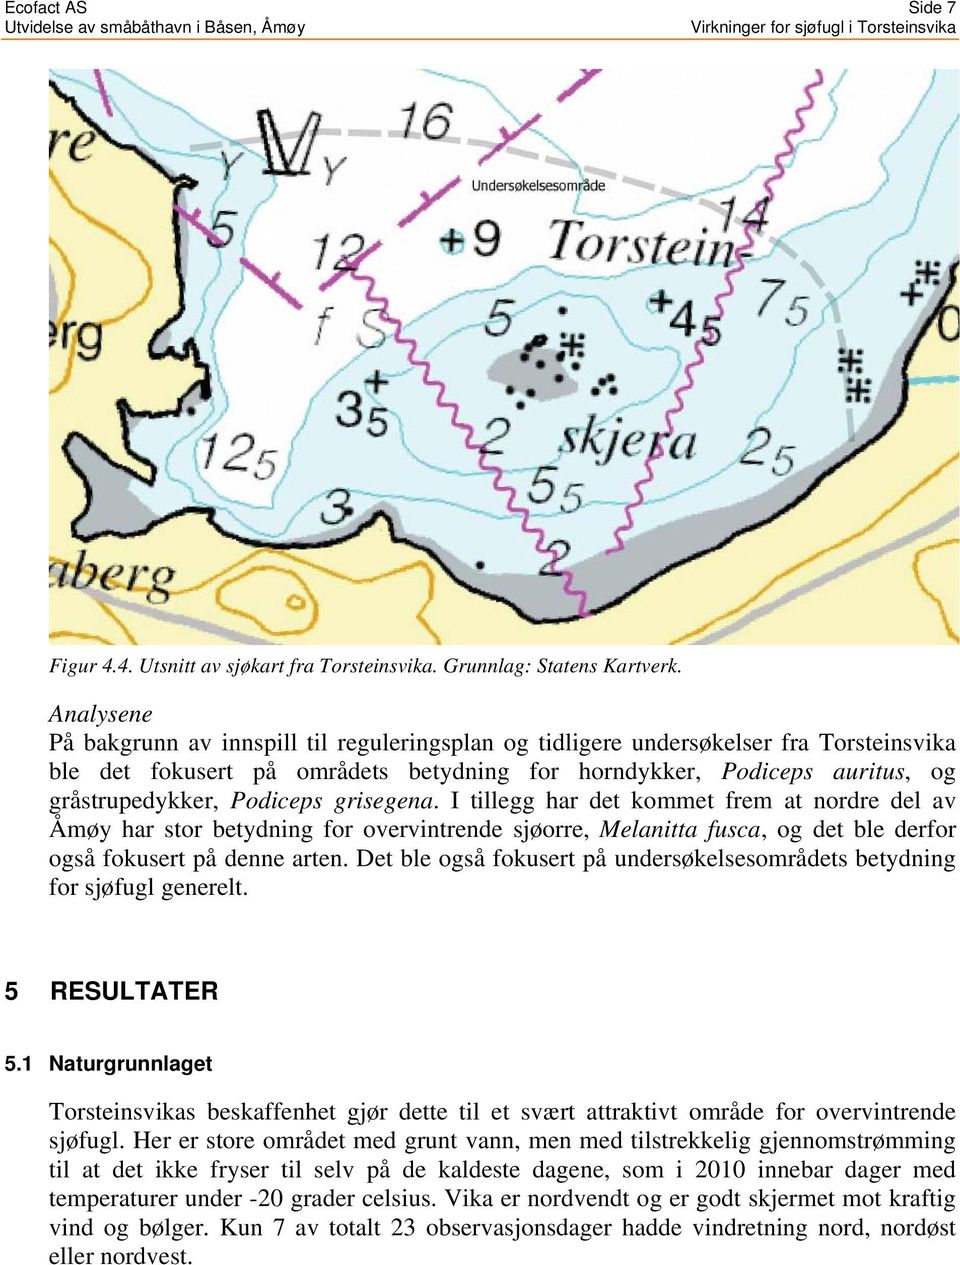 Podiceps grisegena. I tillegg har det kommet frem at nordre del av Åmøy har stor betydning for overvintrende sjøorre, Melanitta fusca, og det ble derfor også fokusert på denne arten.